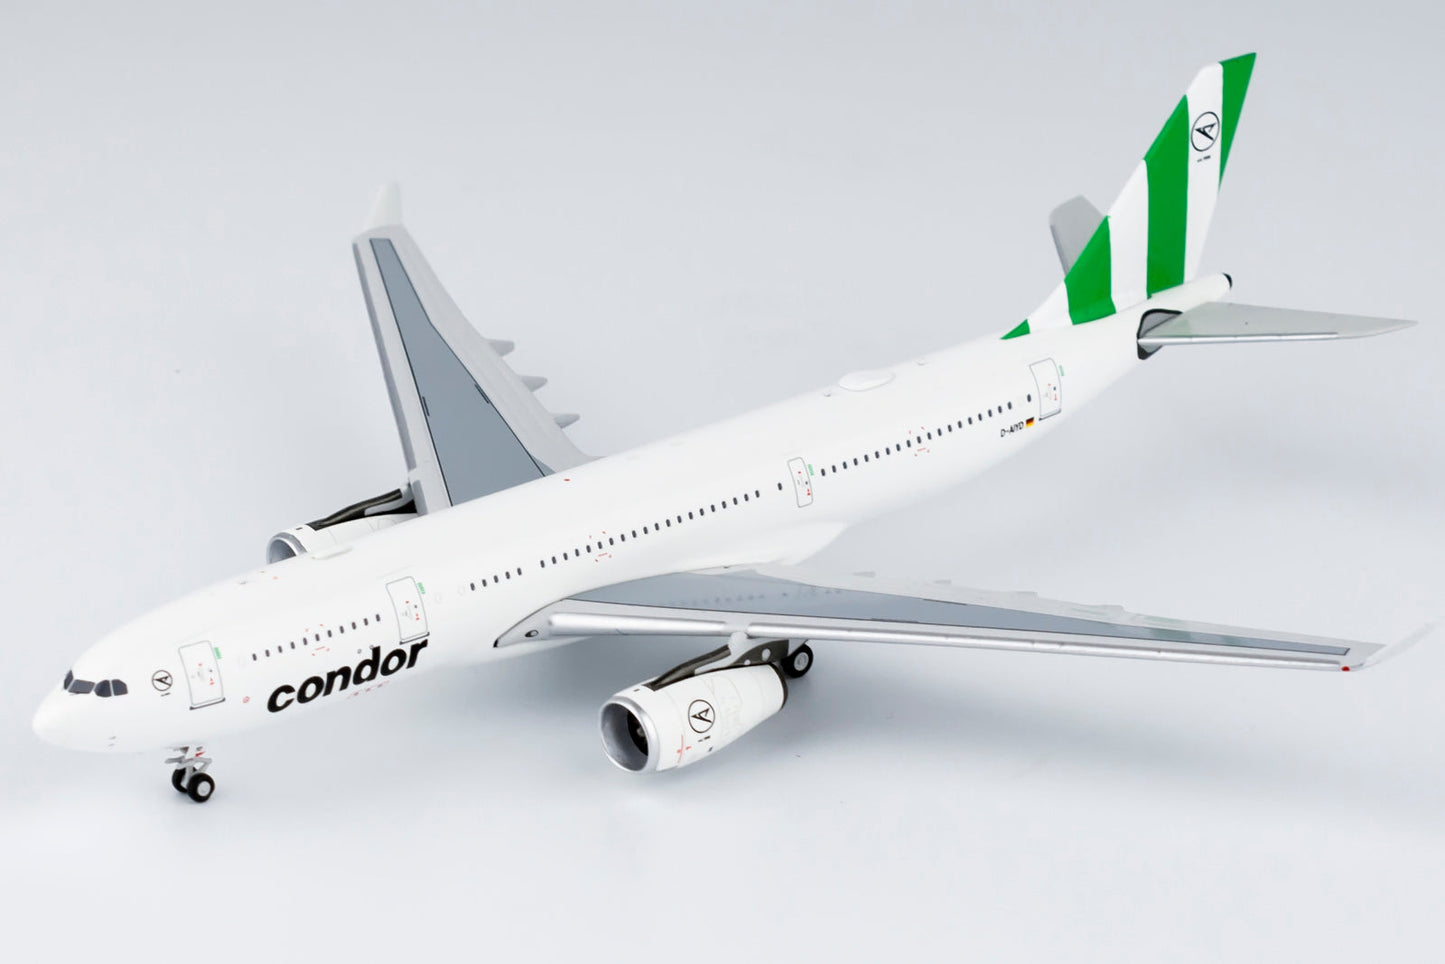 1/400 Condor A330-200 "Green Tail" NG Models 61051